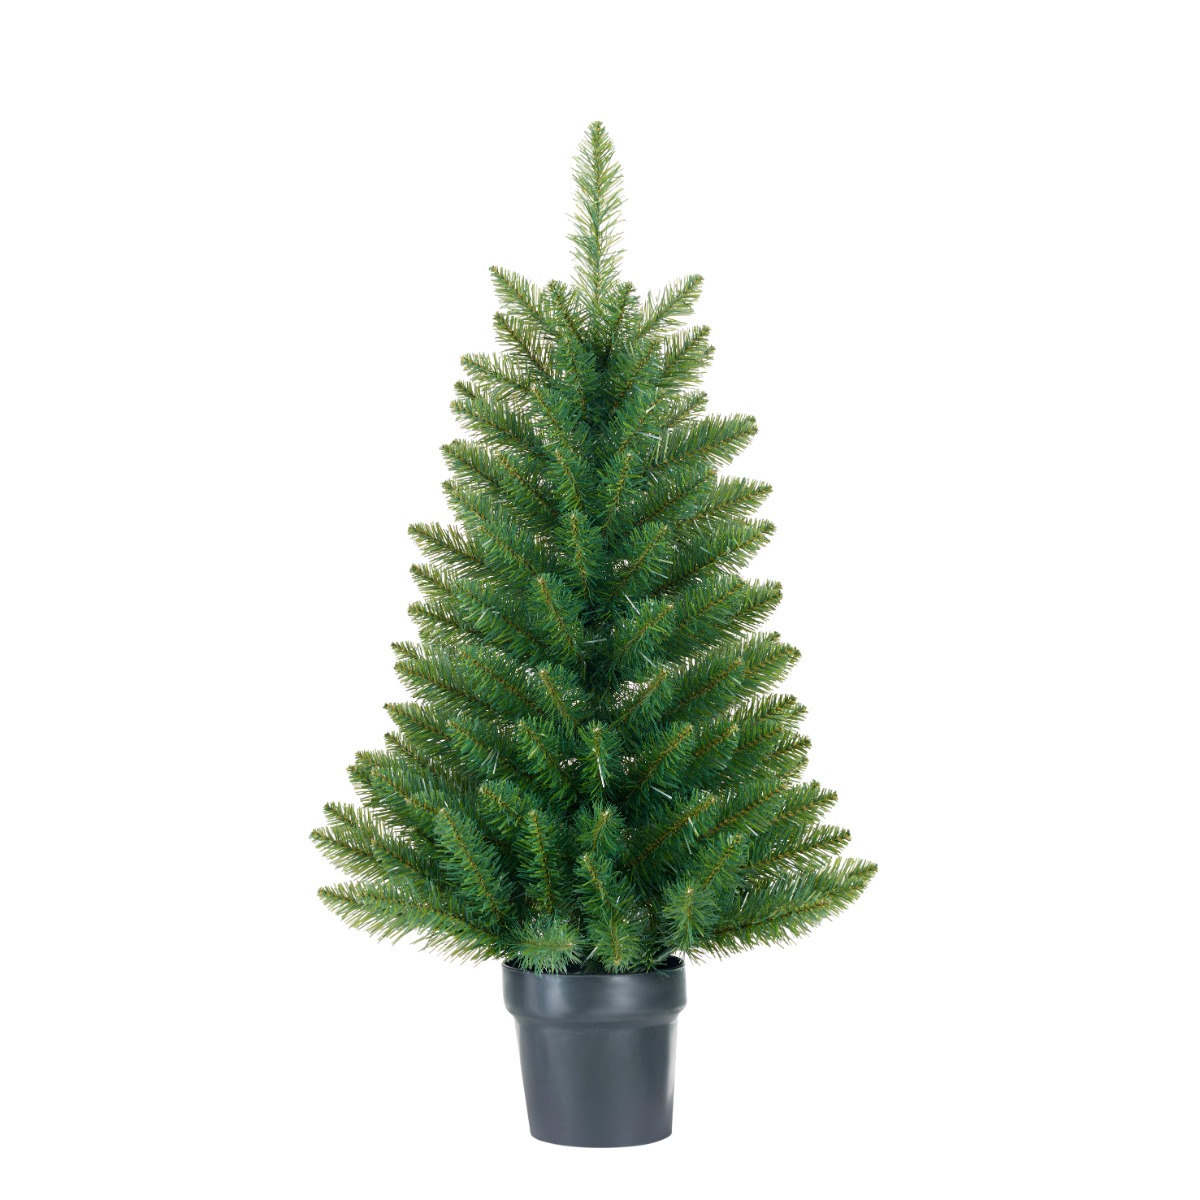 Riverton juletræ med sort potte 90 cm højt